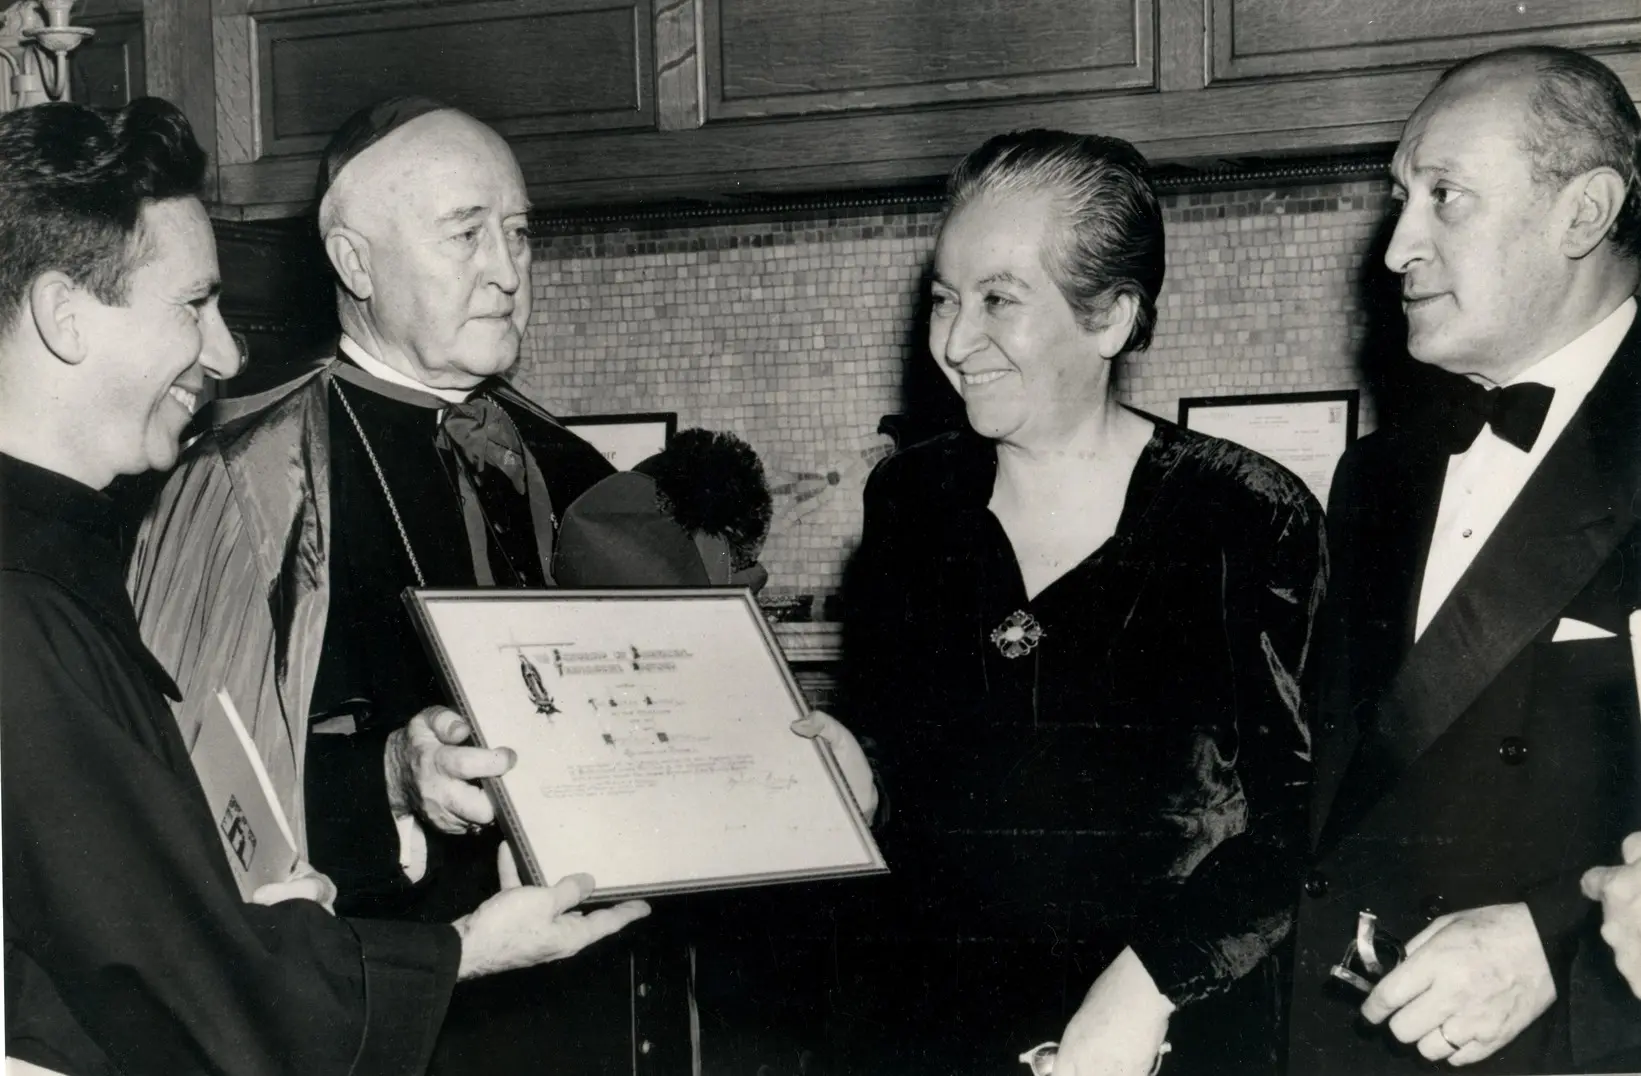 gabriela mistral premio nobel de literatura - Cuál fue el premio más importante de Gabriela Mistral